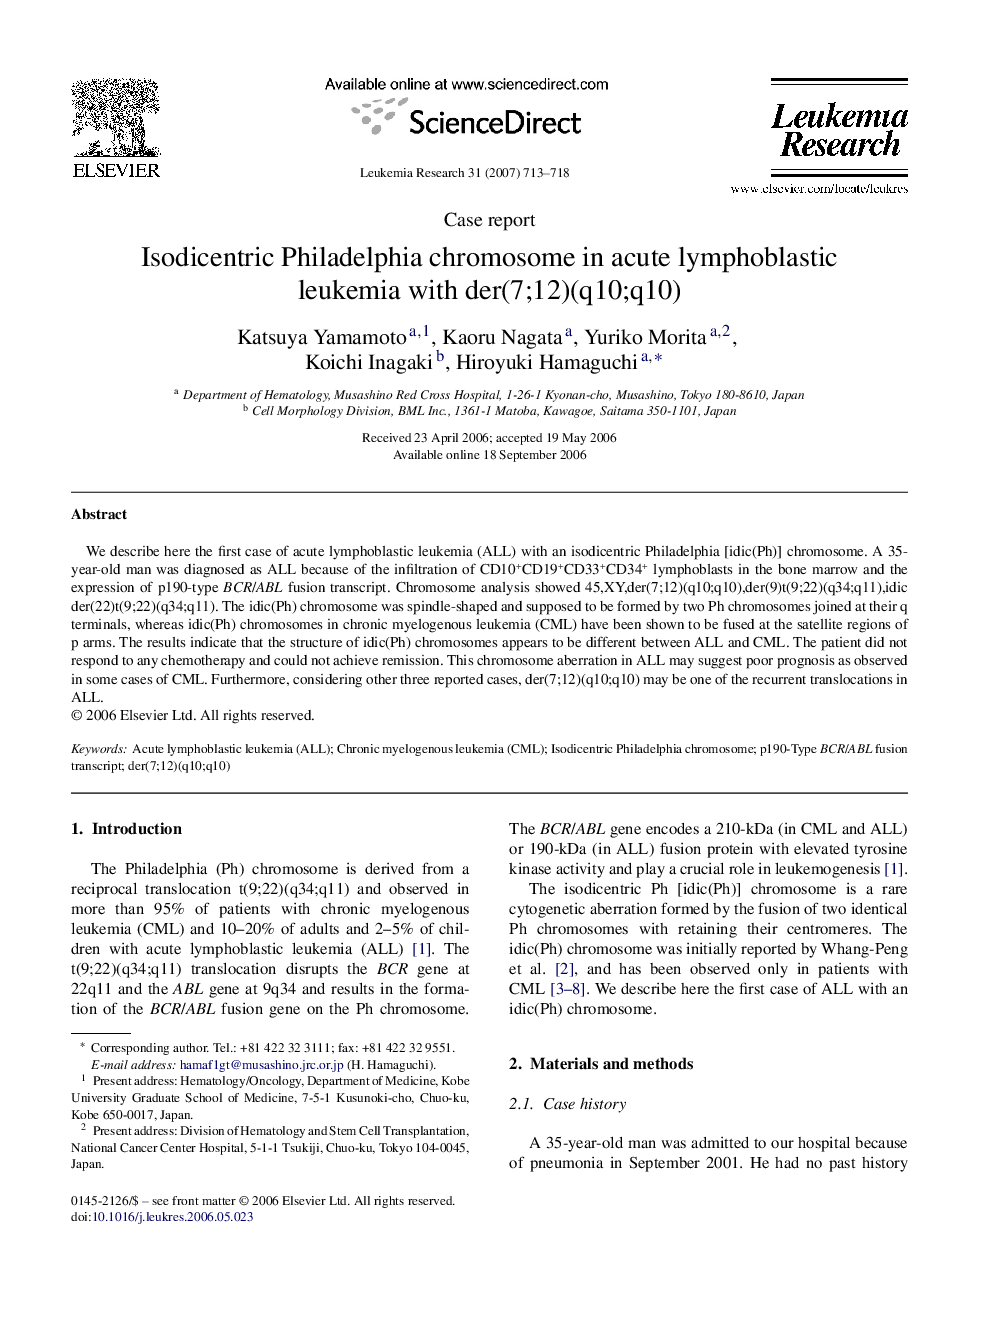 Isodicentric Philadelphia chromosome in acute lymphoblastic leukemia with der(7;12)(q10;q10)